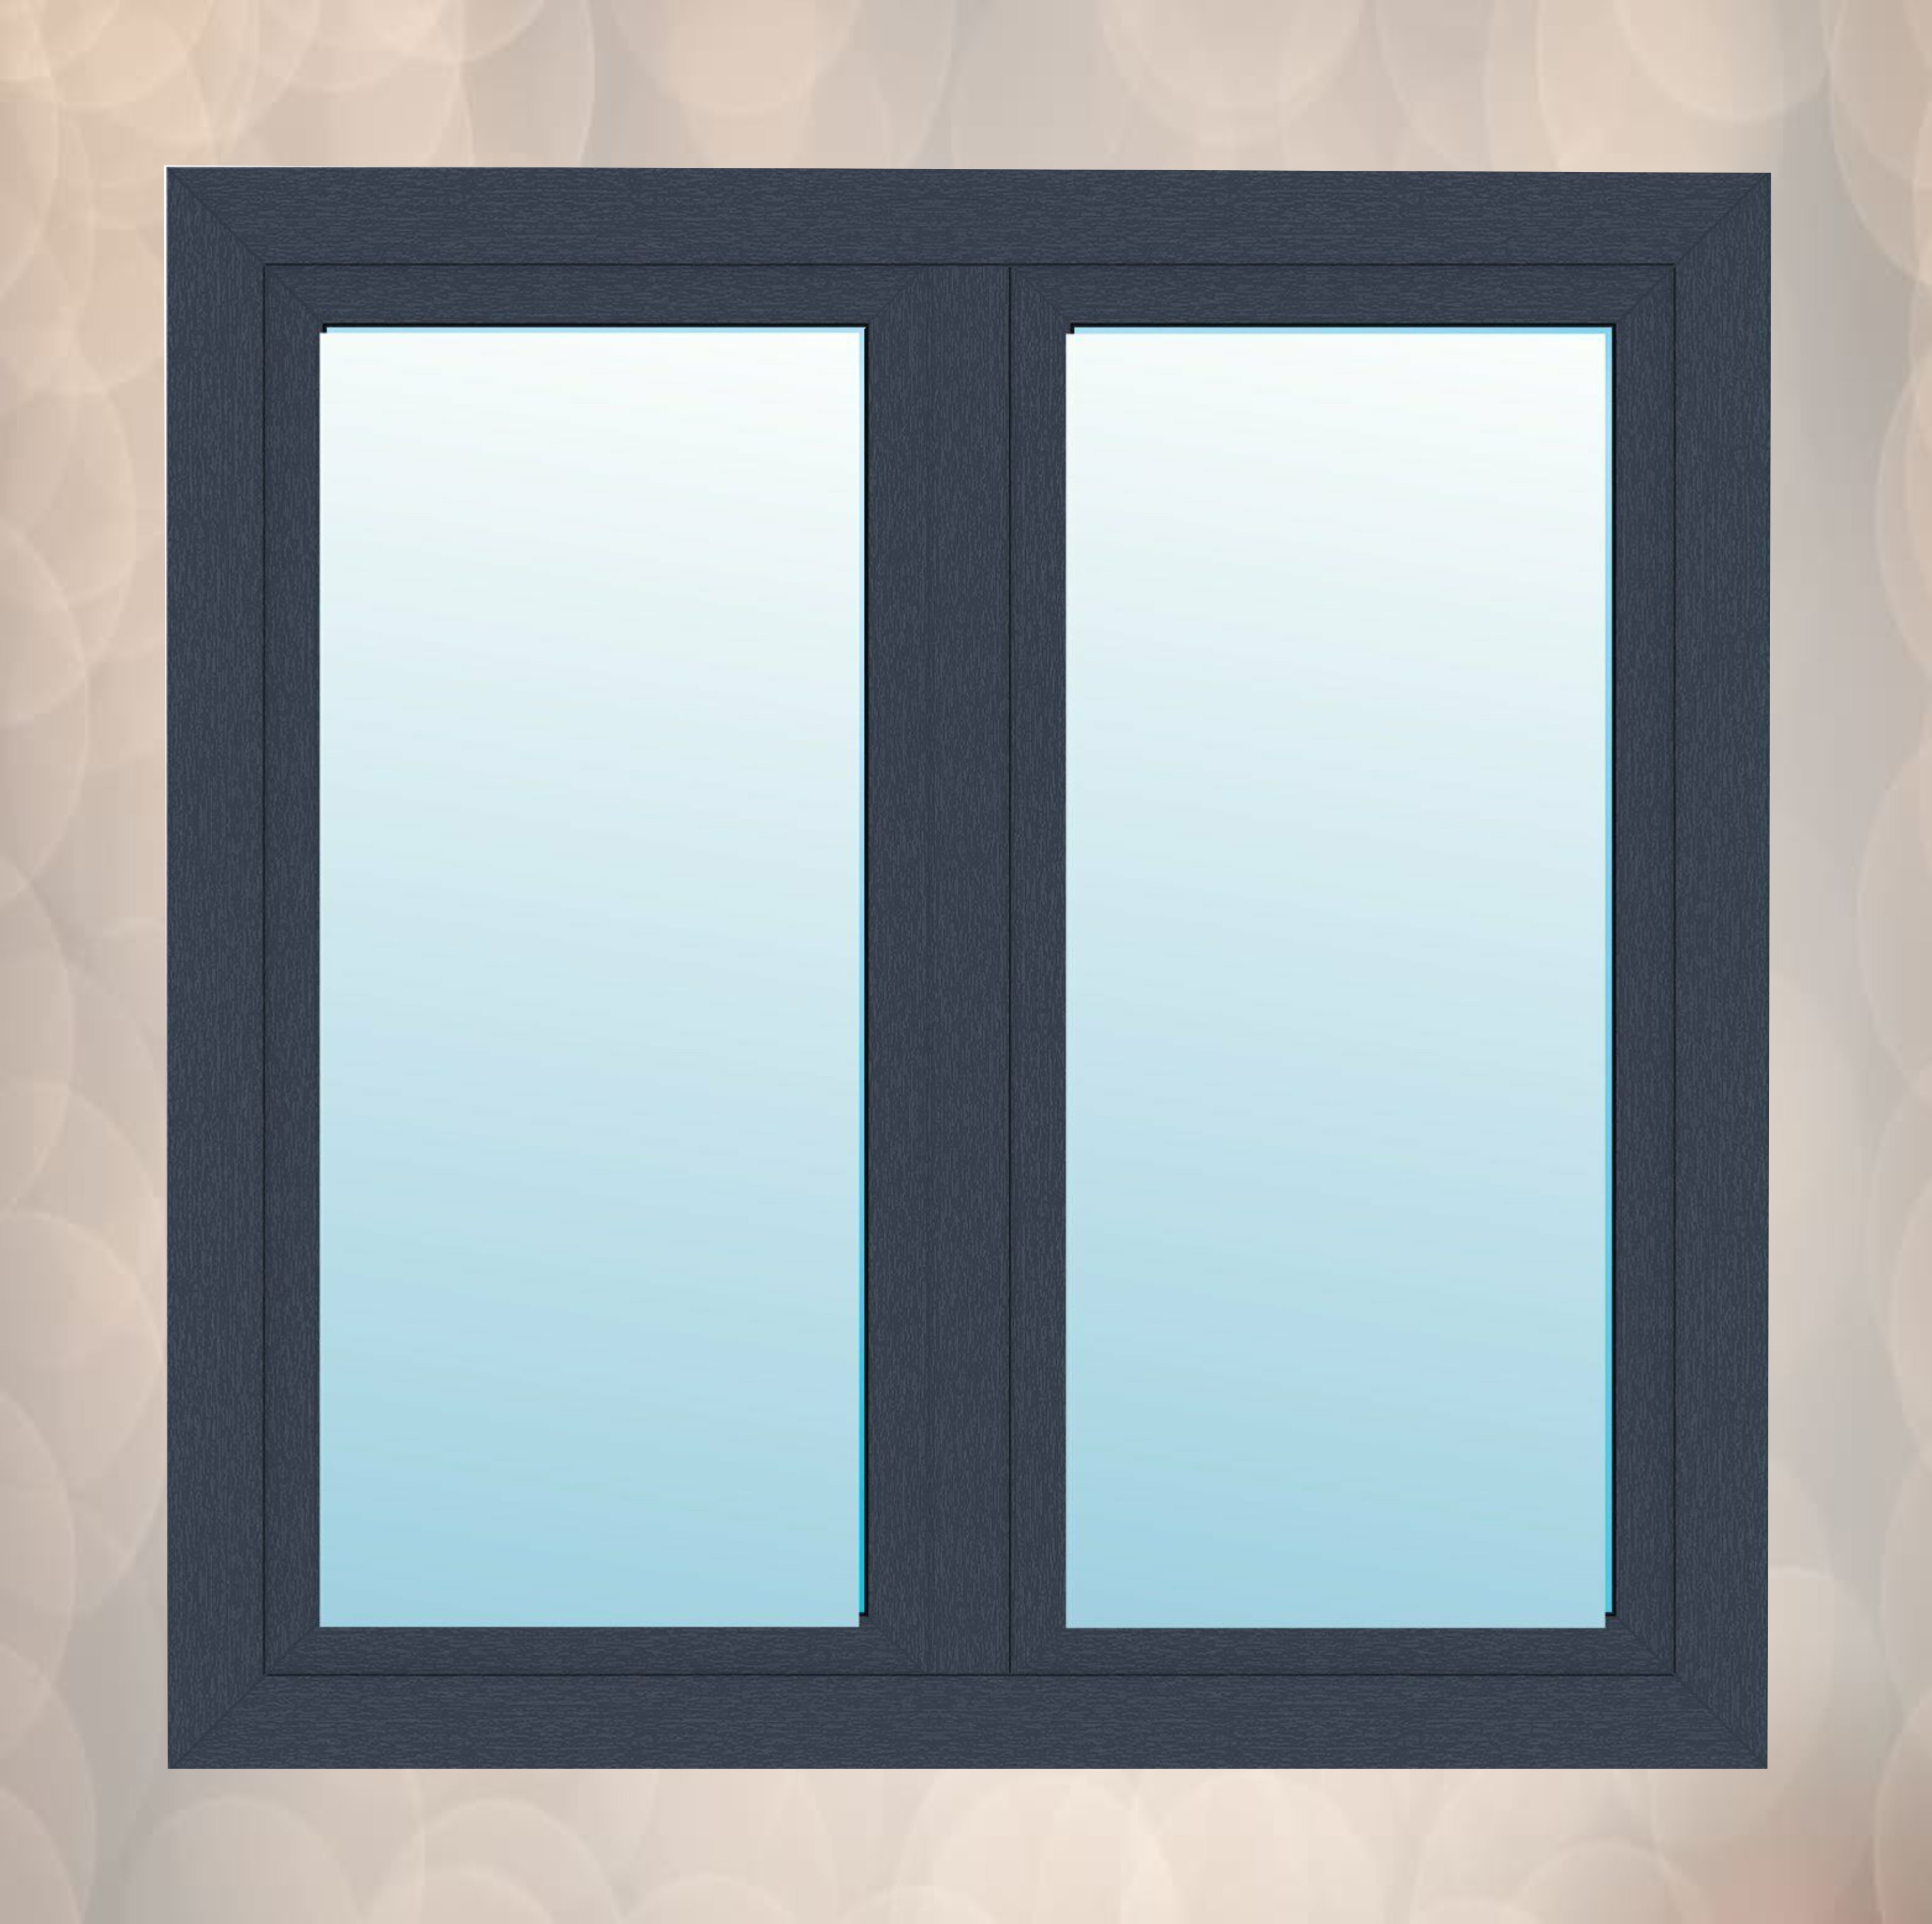 Fenster(cod 120) mit Stulp Anthrazitgrau außen innen weiß 2 flügeliges Kunststofffenster